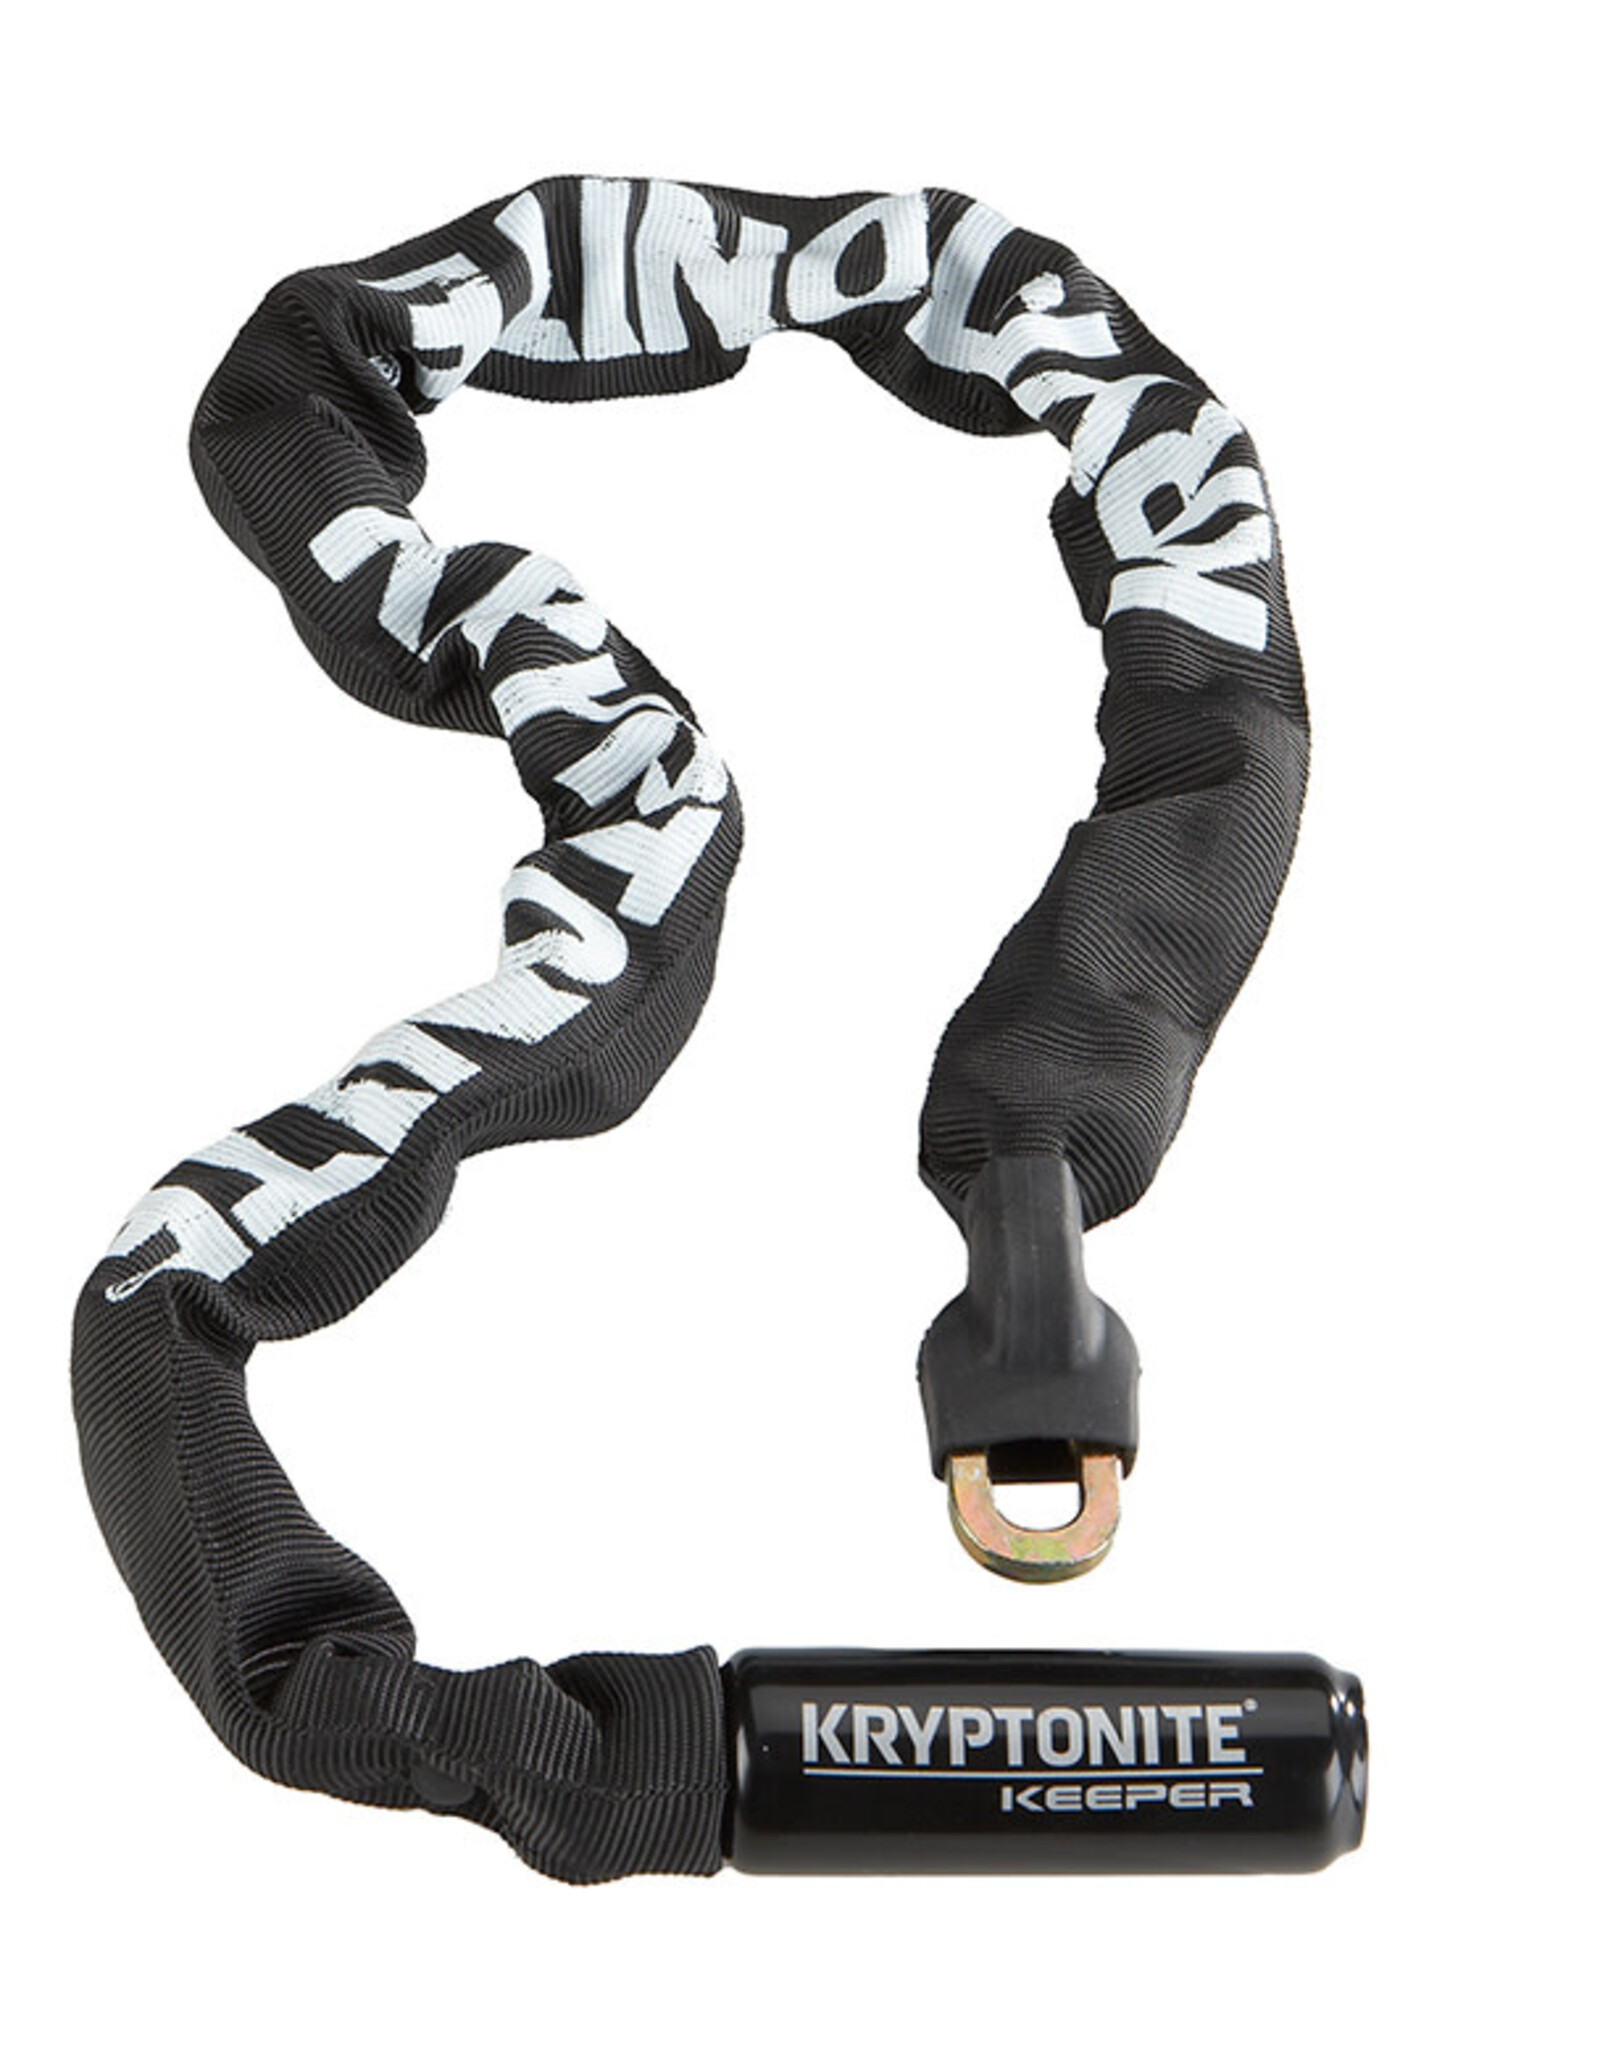 Kryptonite Kryptonite Keeper 785 Chain Lock